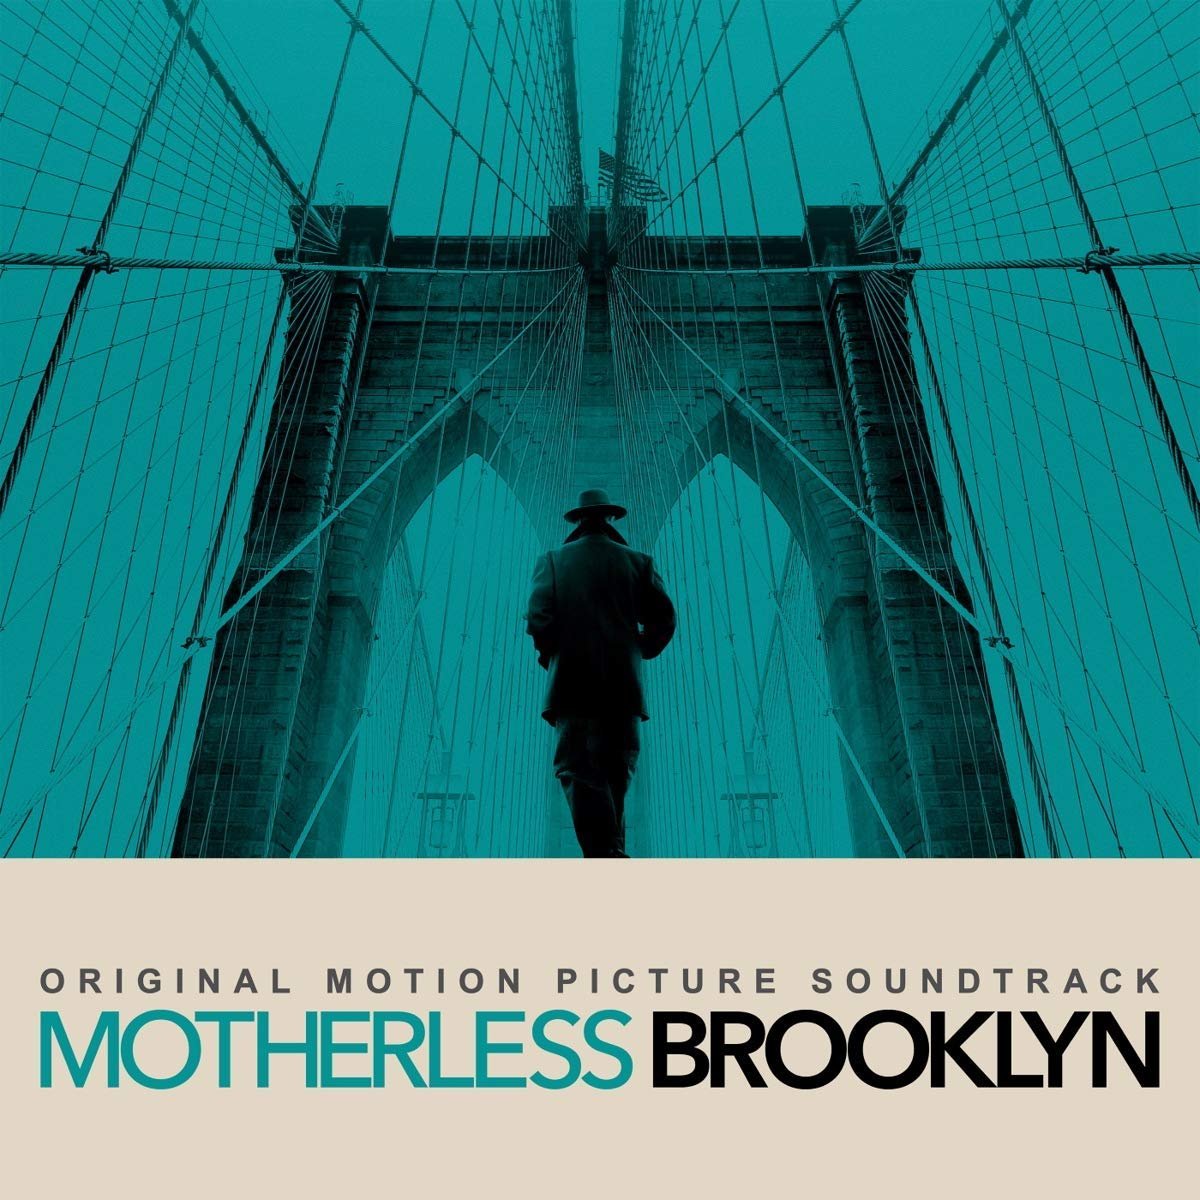 CD Shop - OST / YORKE, THOM, FLEA & WYNTON MARSALIS DAILY BATTLES (FROM MOTHERLESS BROOKLYN: ORIGINAL MOTION